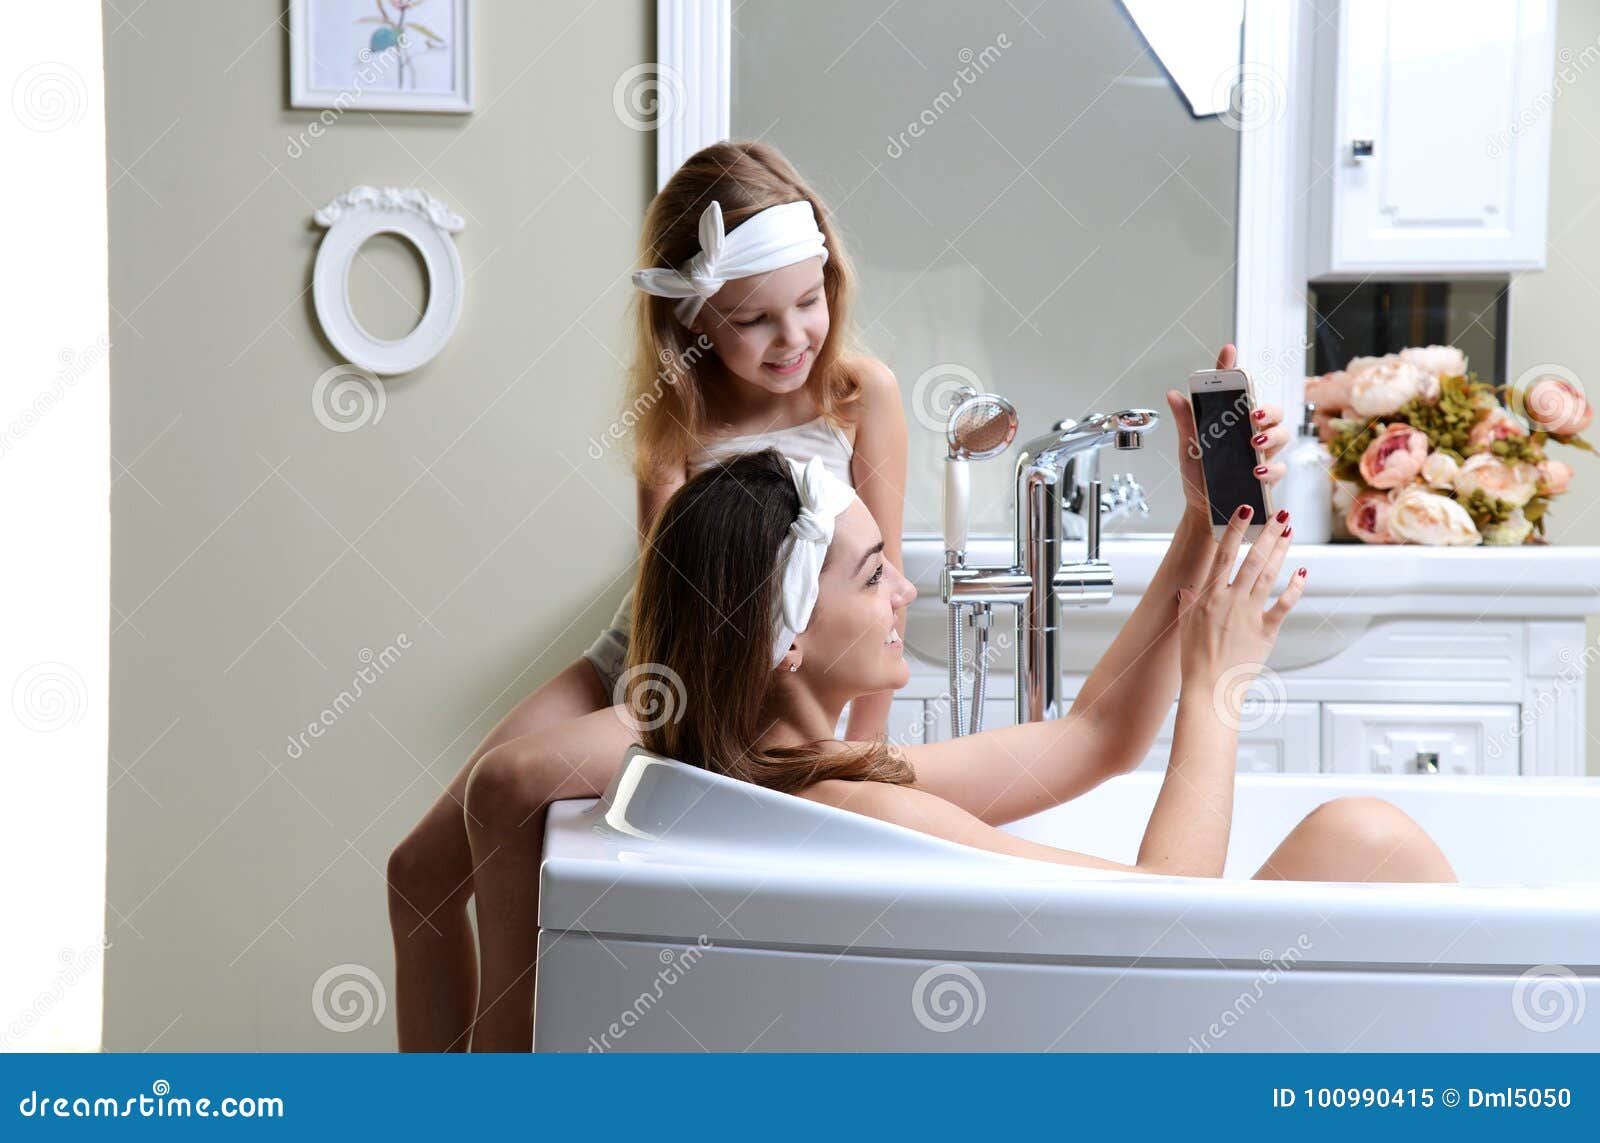 Дочь в душе видео. Фотосессия мама и дочка в ванной. Дочка ванна. Дочь в ванной. Мама в ванной комнате.